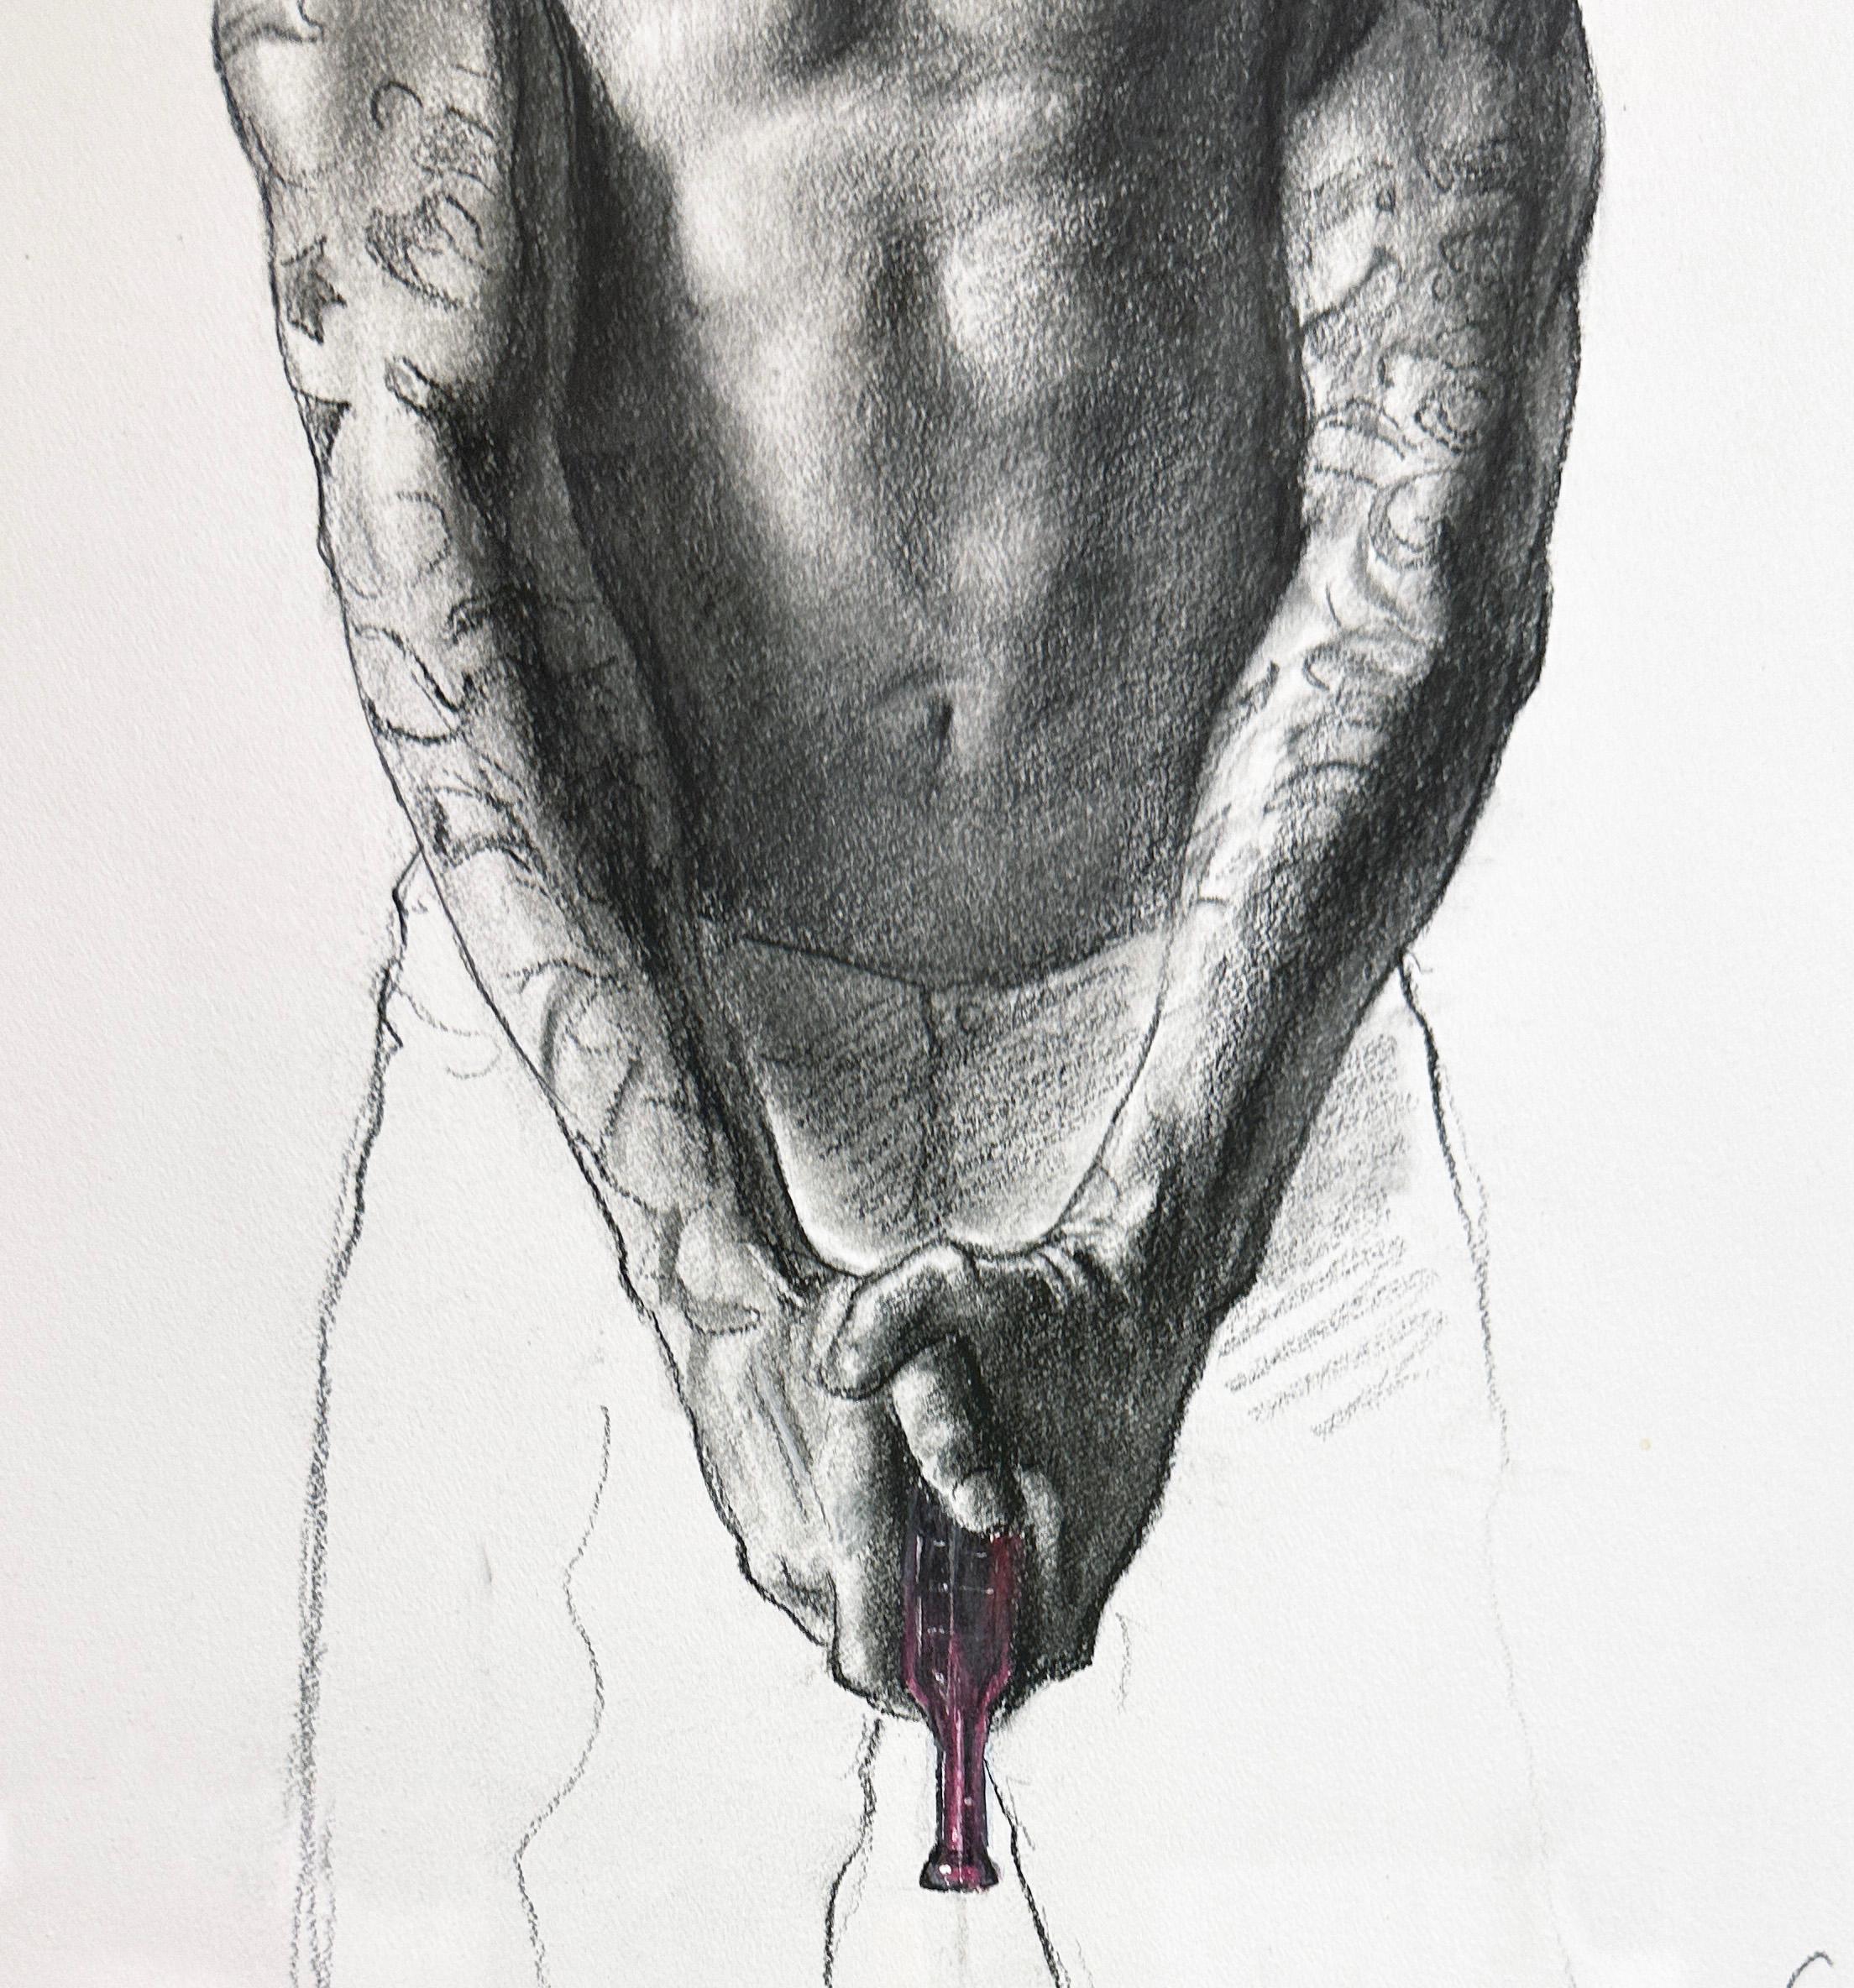 Force - Homme tatoué torse nu tenant un pistolet à eau en plastique violet, encadré - Art de Bruno Surdo